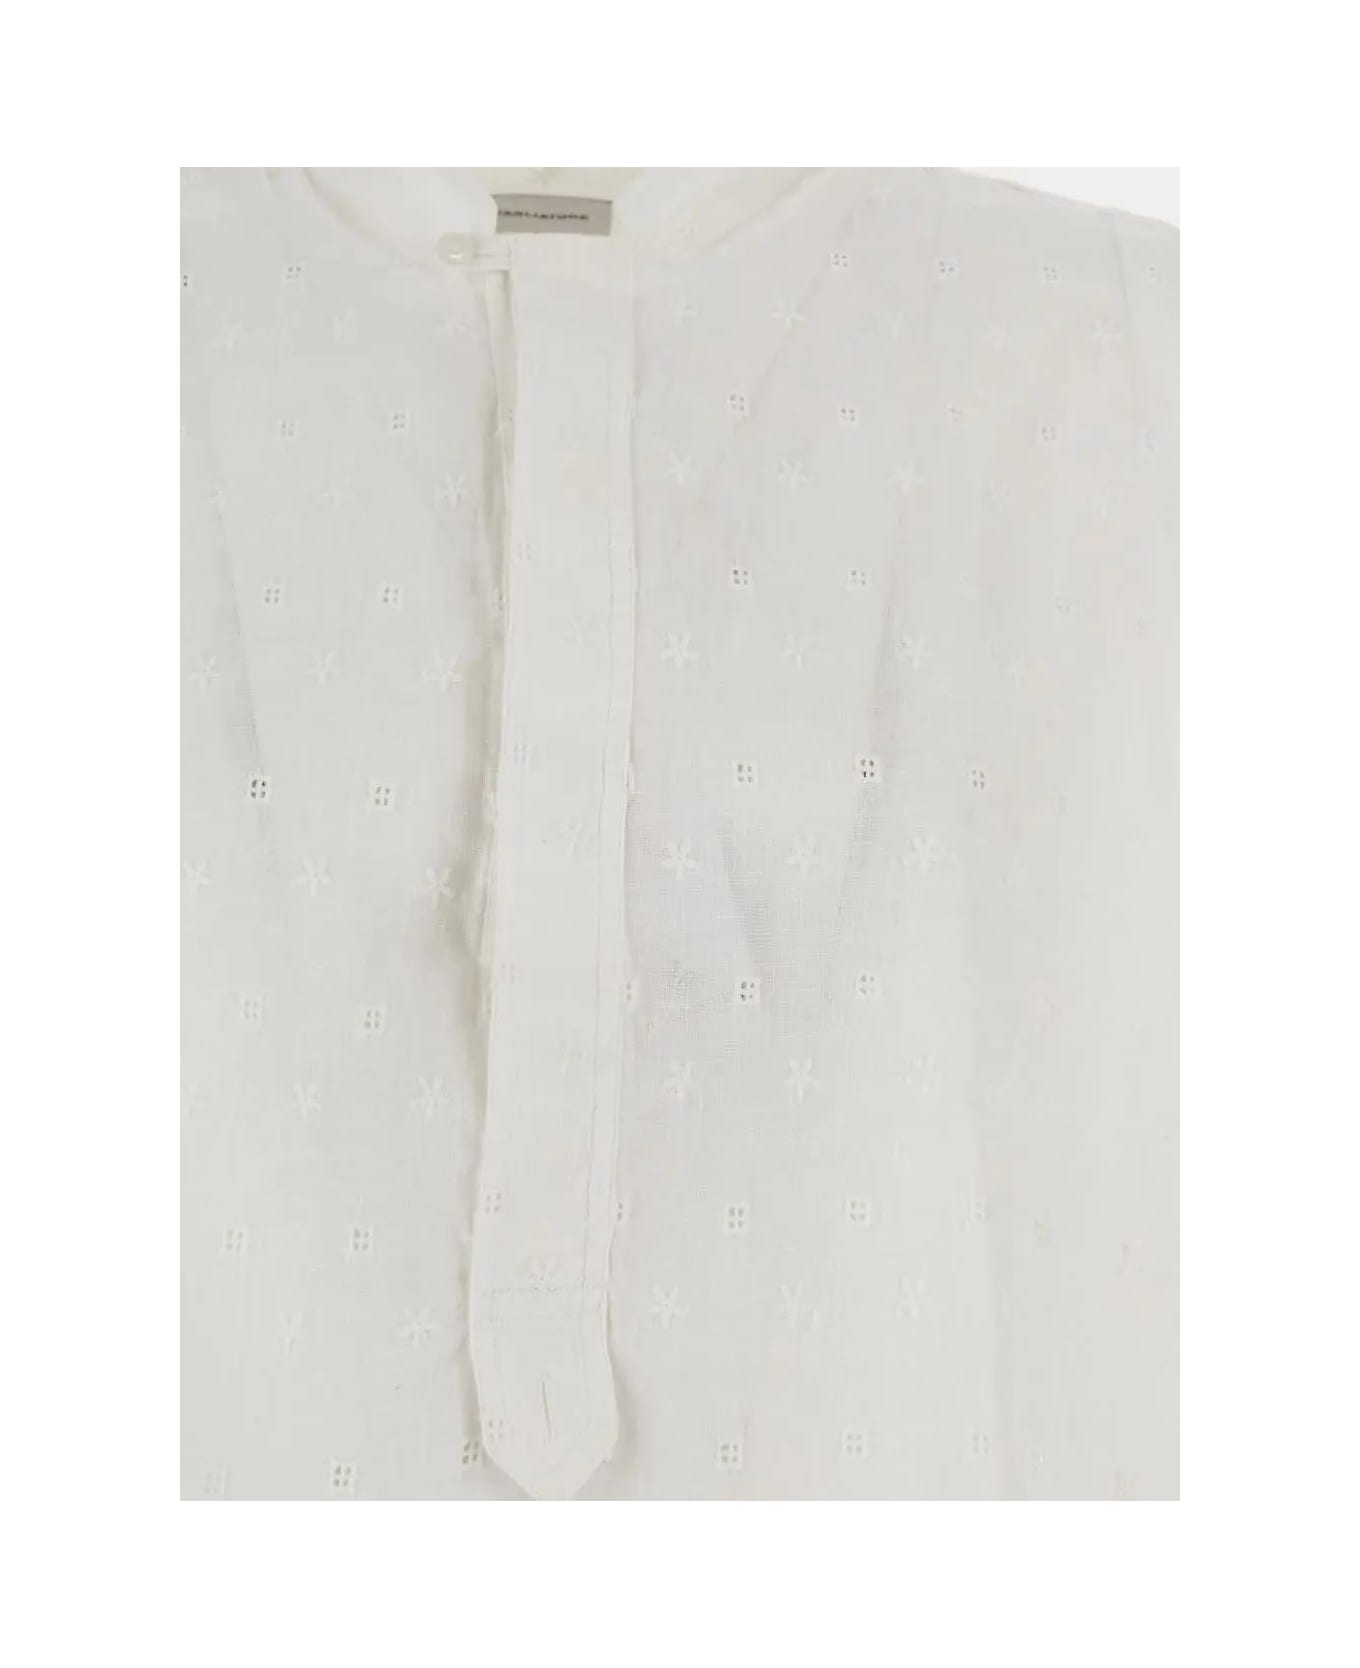 Tagliatore Embroidered Shirt - White